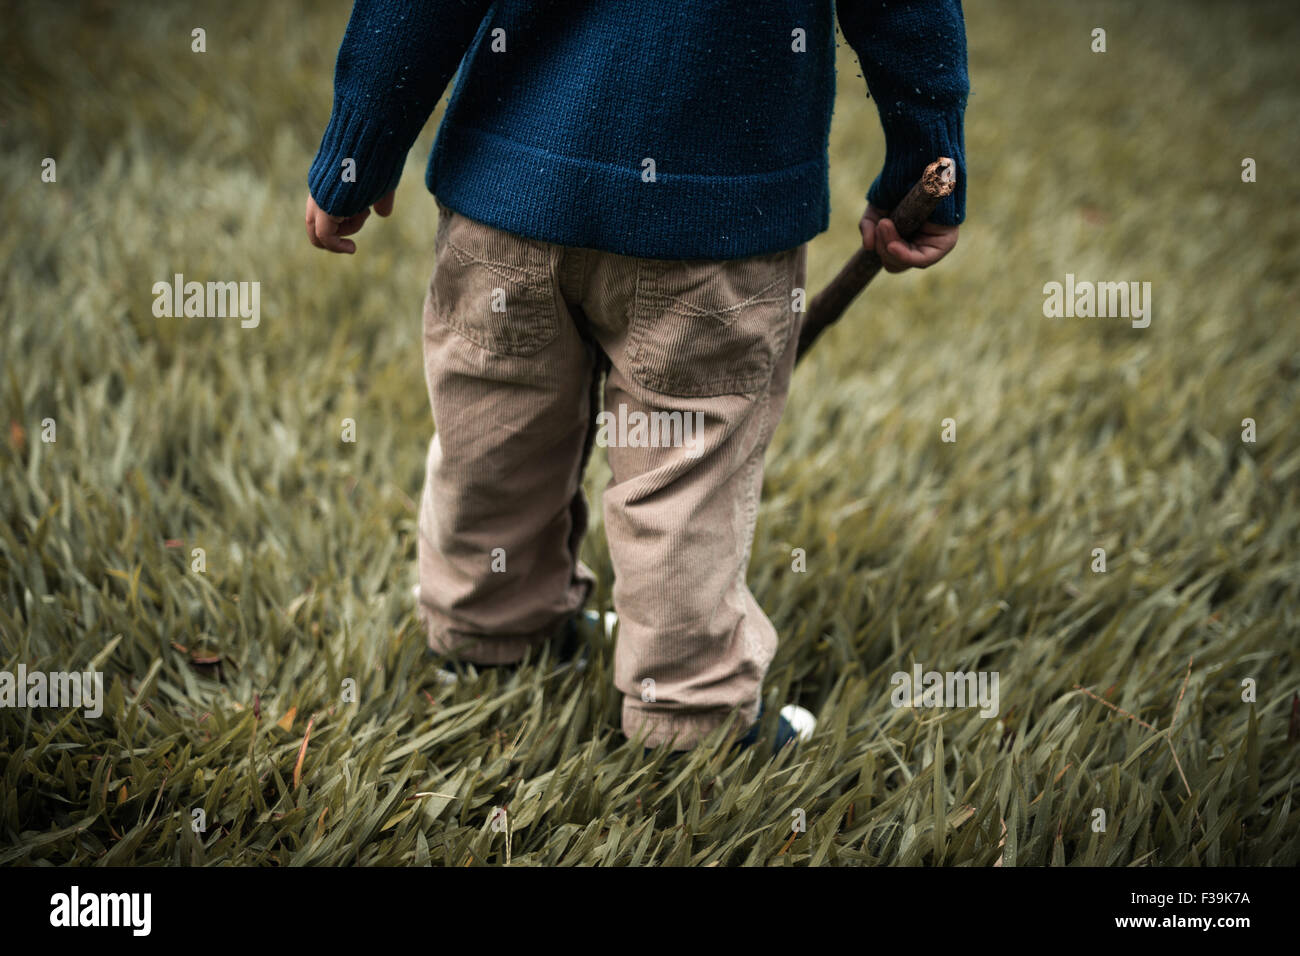 Sezione bassa di un bambino in piedi in campo tenendo un bastone di legno Foto Stock